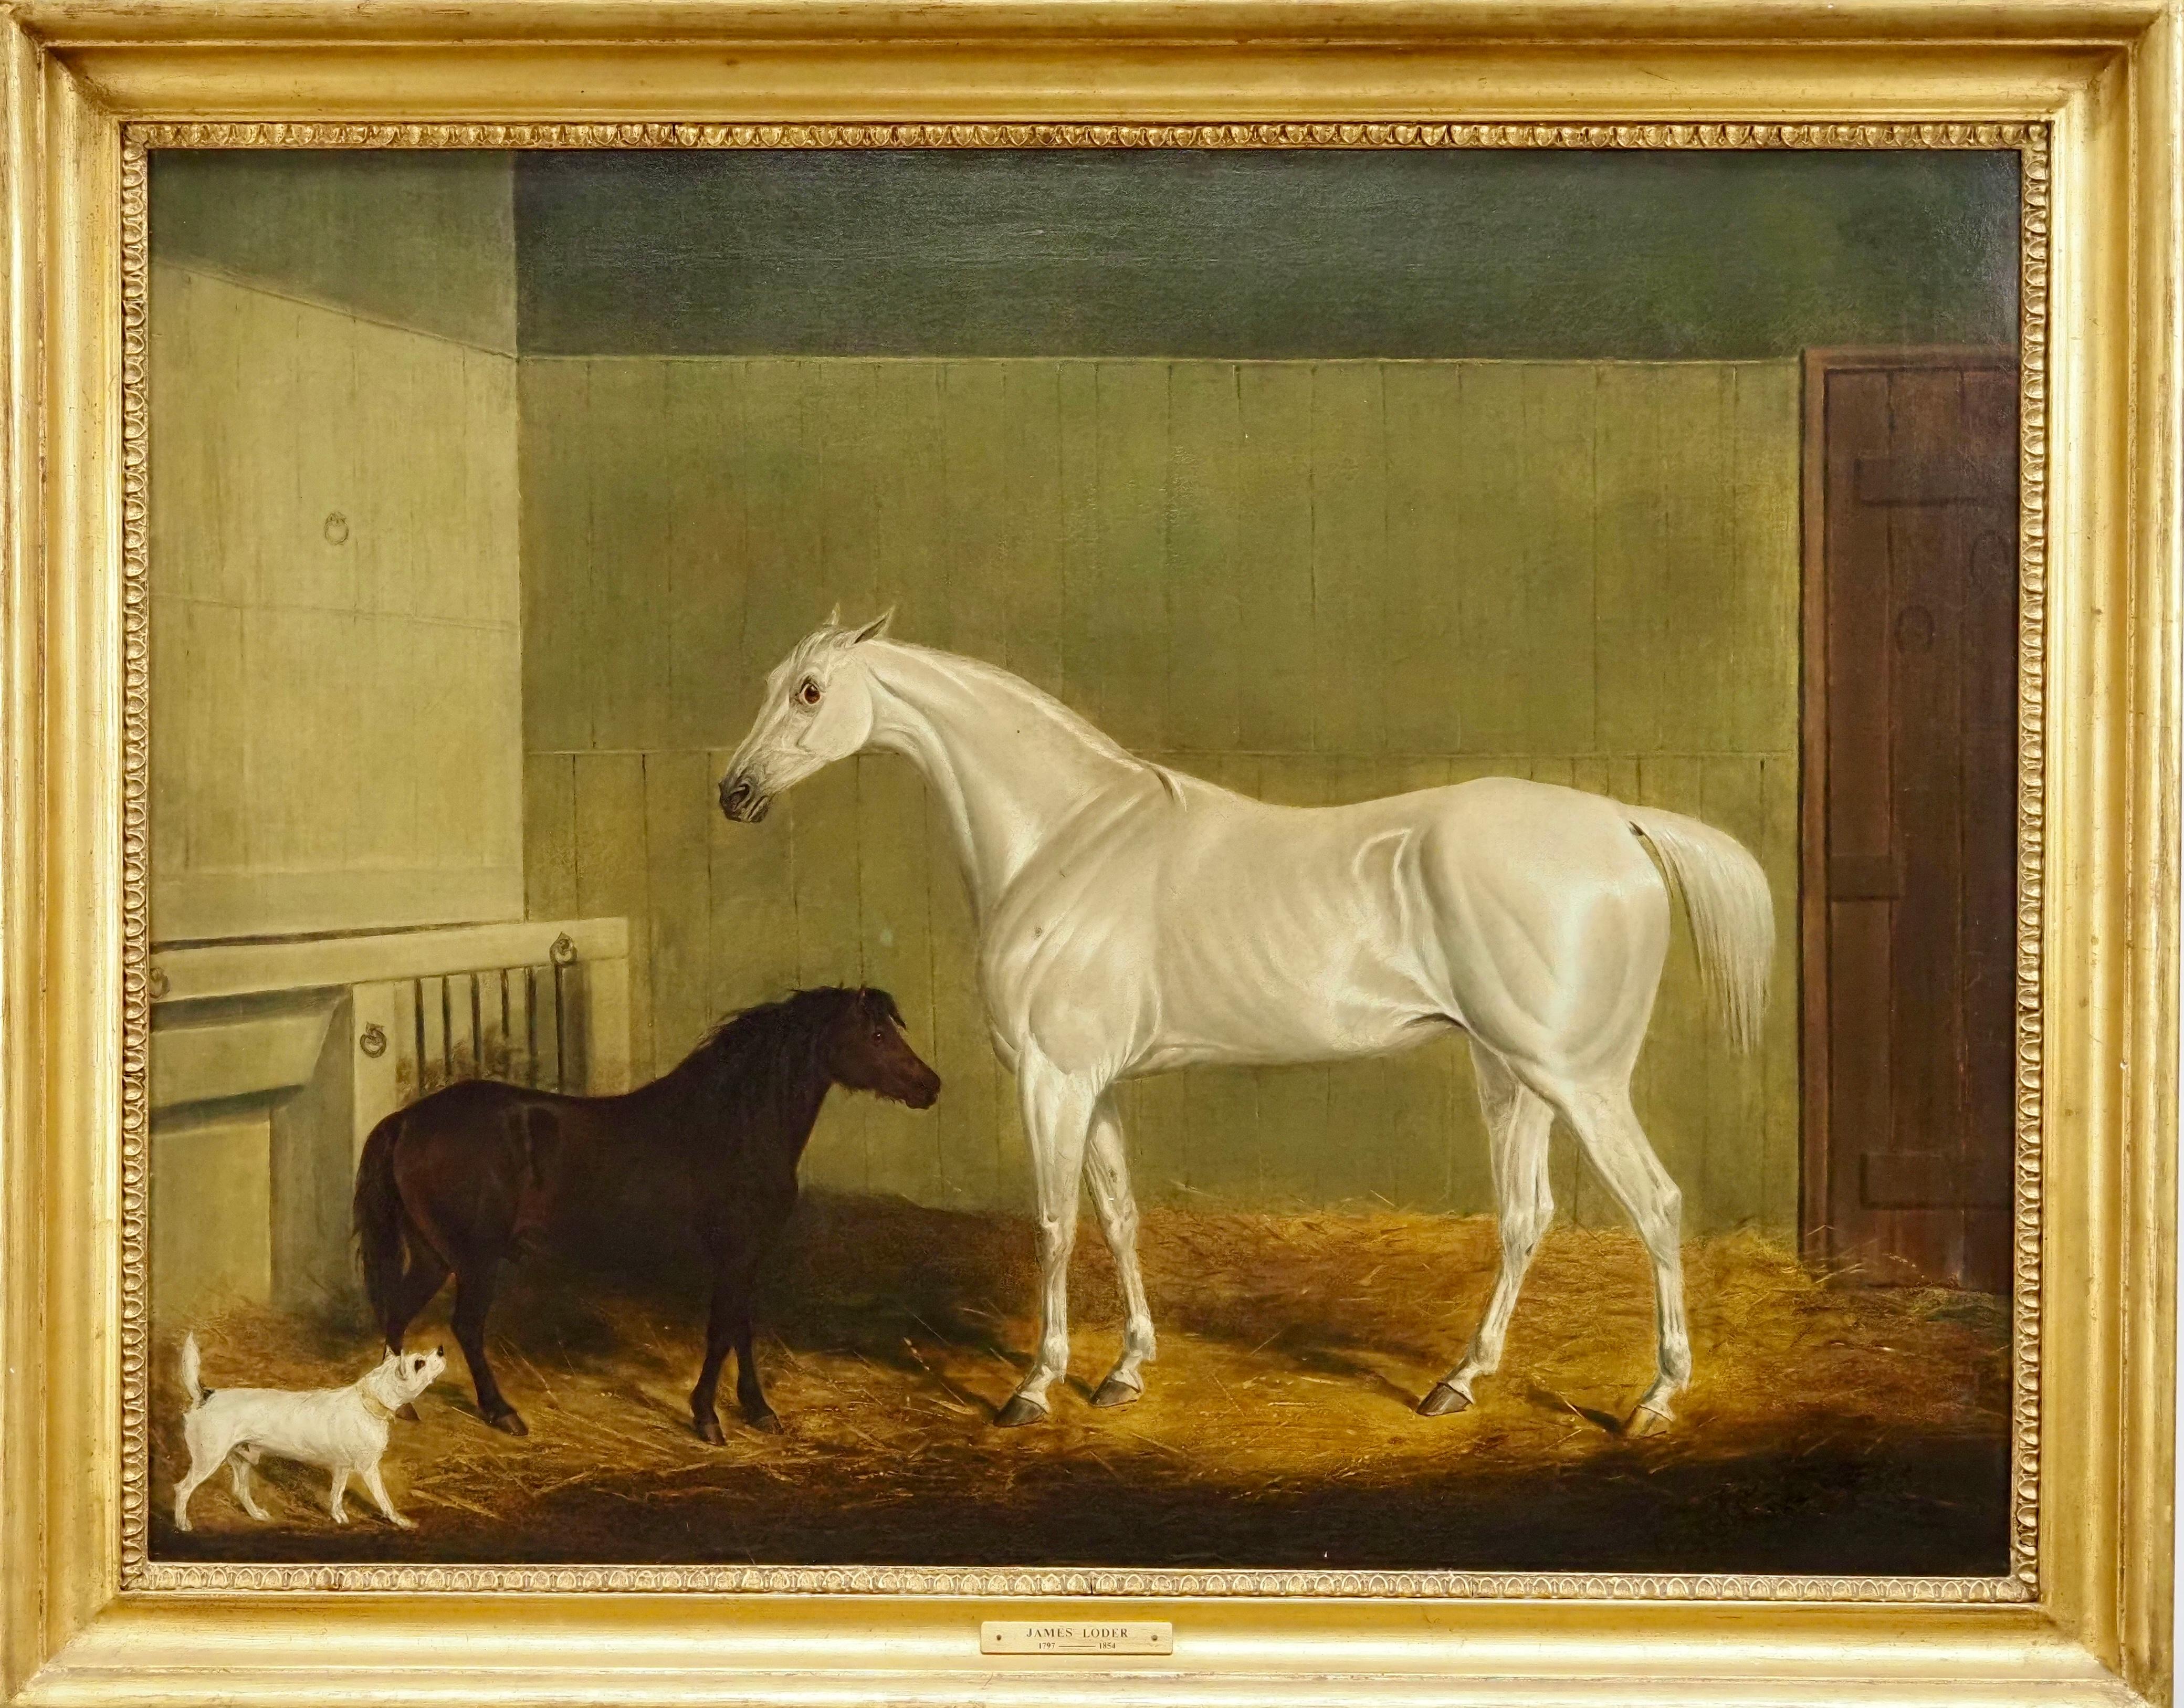 Animal Painting James Loder of Bath - Un cheval, un poney et un terrier gris dans une écurie